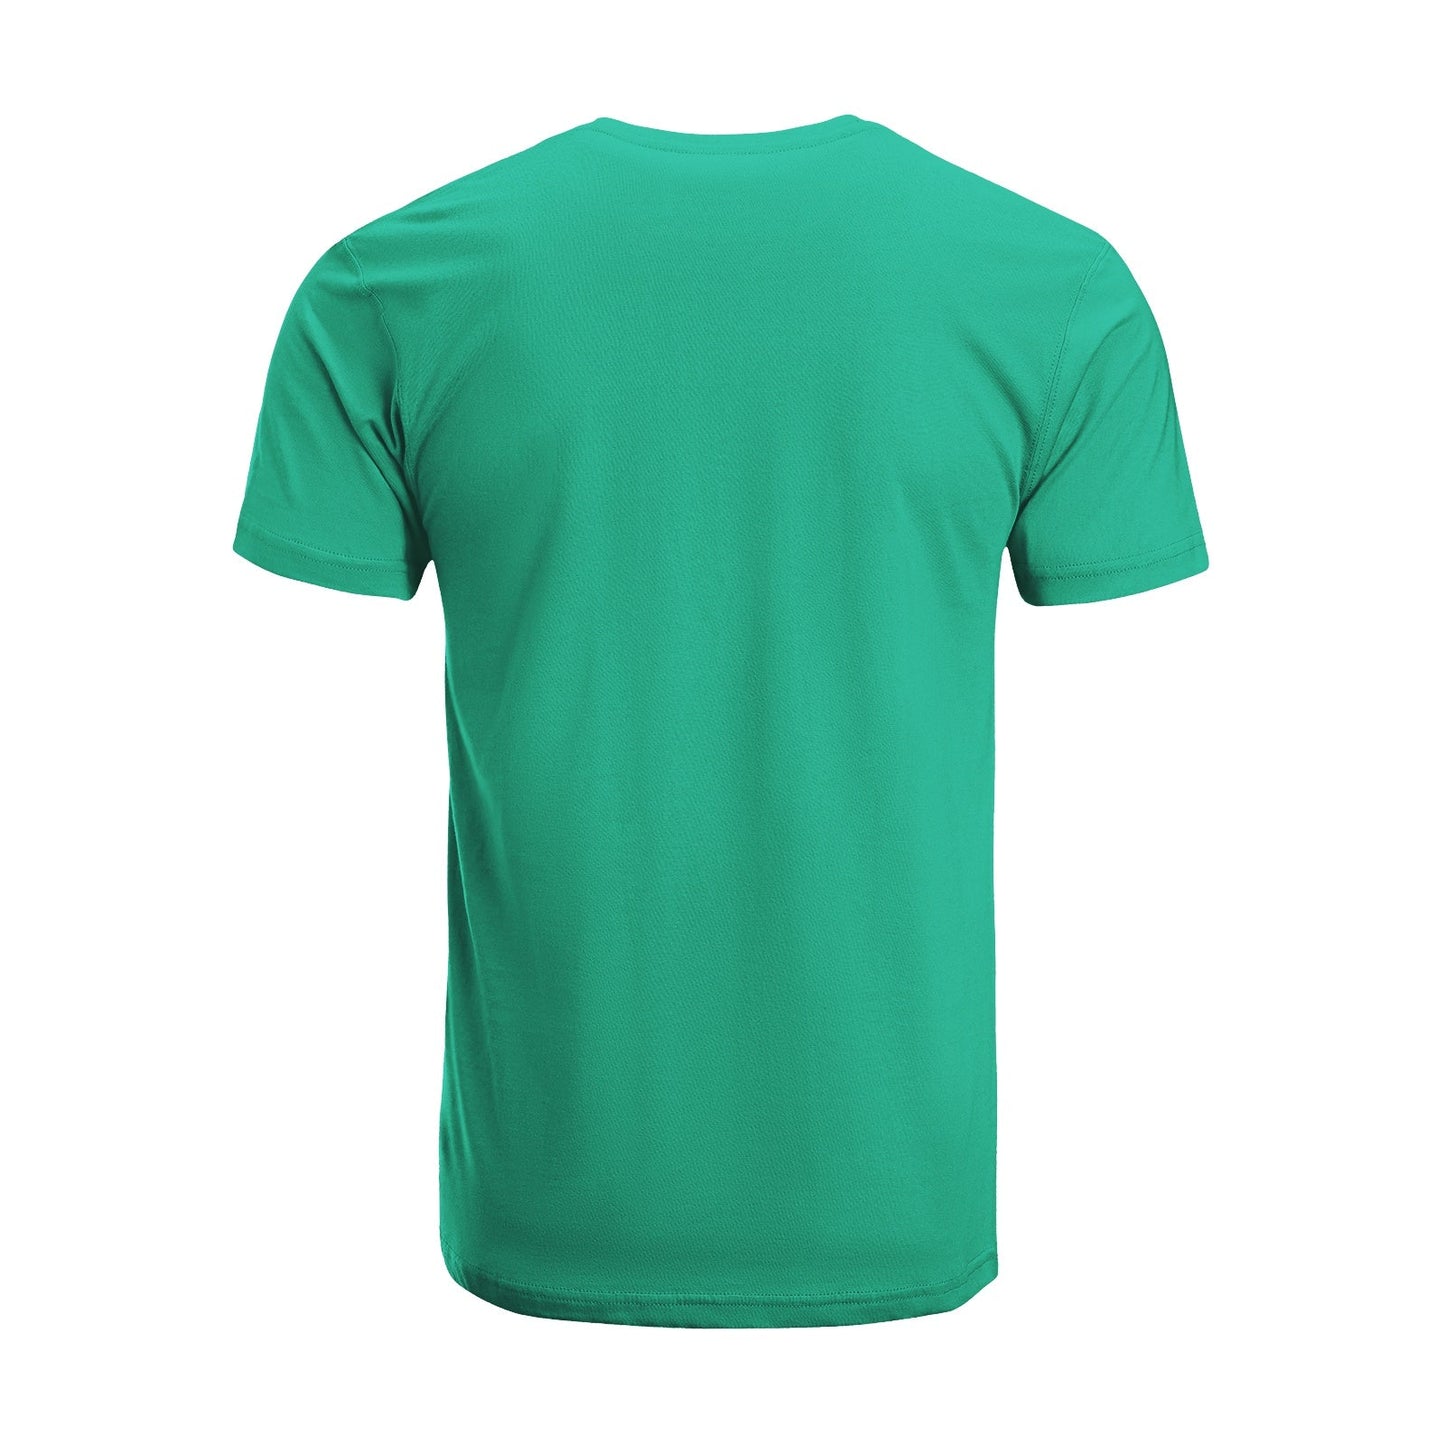 Unisex Short Sleeve Crew Neck Cotton Jersey T-Shirt TRUCK 40